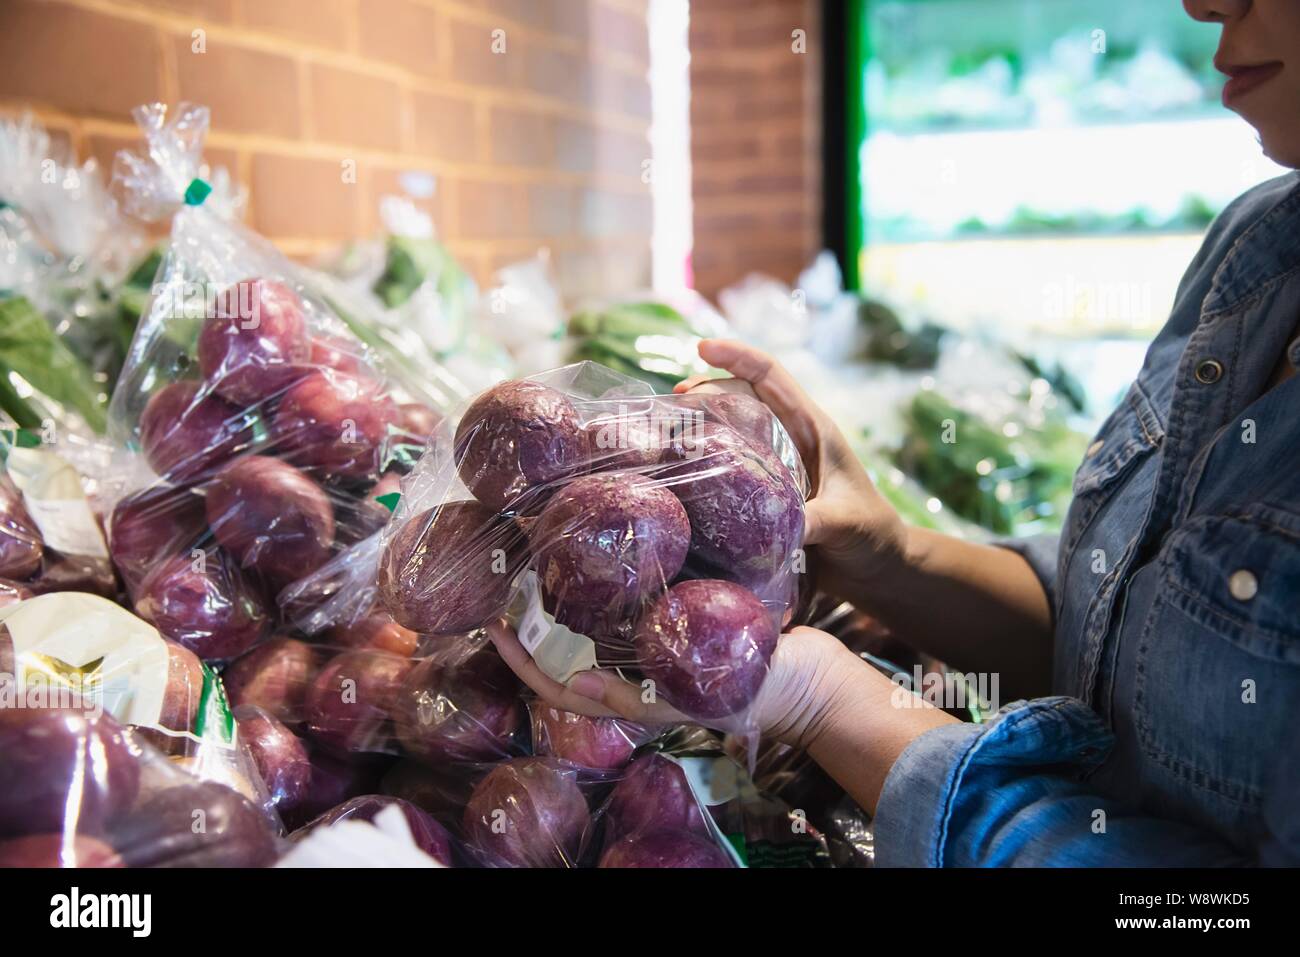 Dame est shopping in supermarket store de légumes frais - femme au marché frais concept de vie Banque D'Images